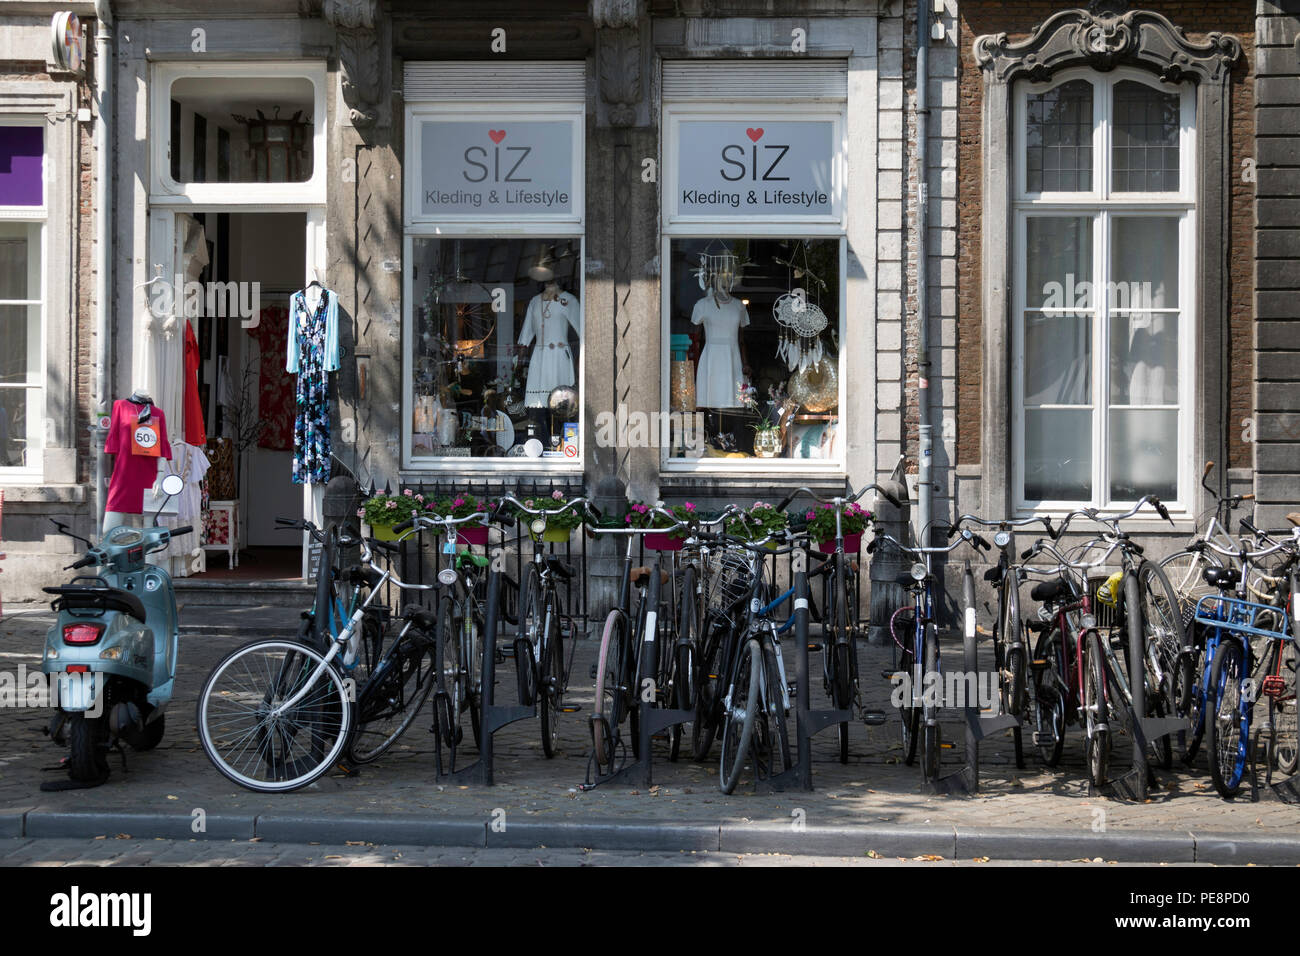 Ieder Ik was mijn kleren uitzending SIZ lifestyle shop in Rechtstraat Maastricht Stock Photo - Alamy